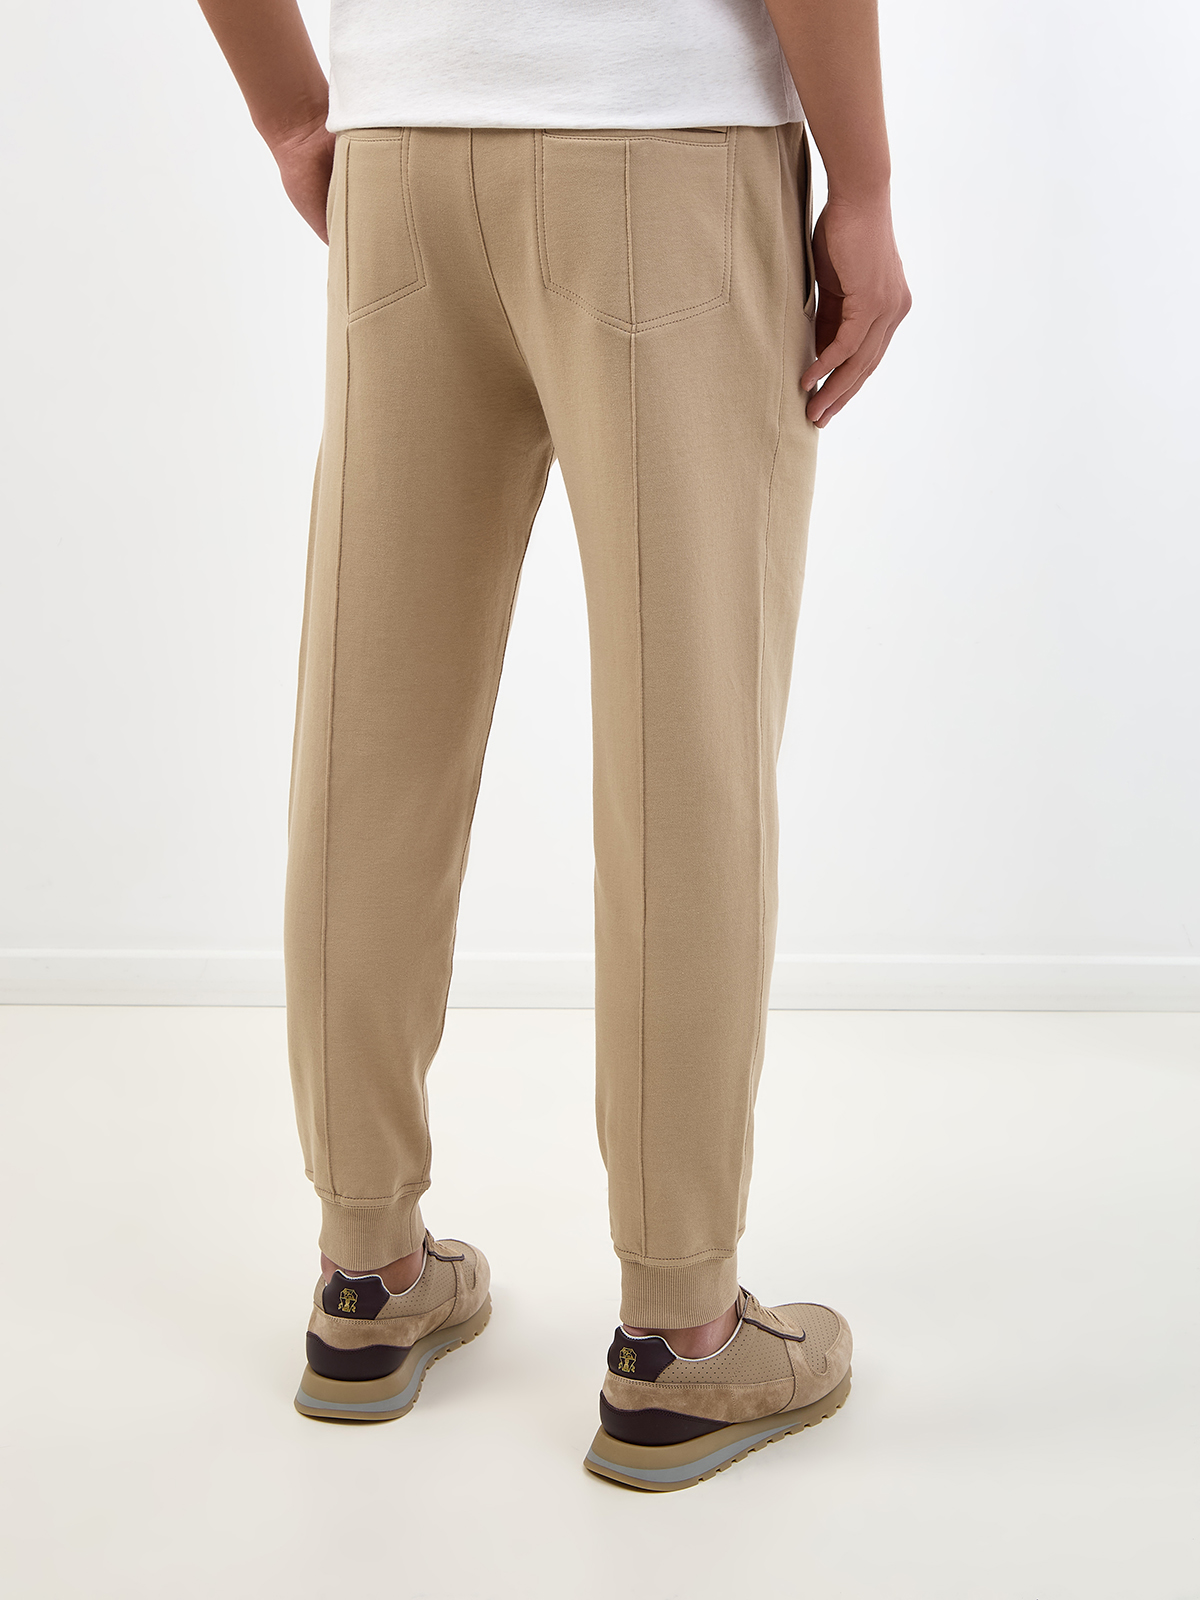 Хлопковые брюки-джоггеры Travelwear с поясом на кулиске BRUNELLO CUCINELLI, цвет бежевый, размер 50;54;48 - фото 4